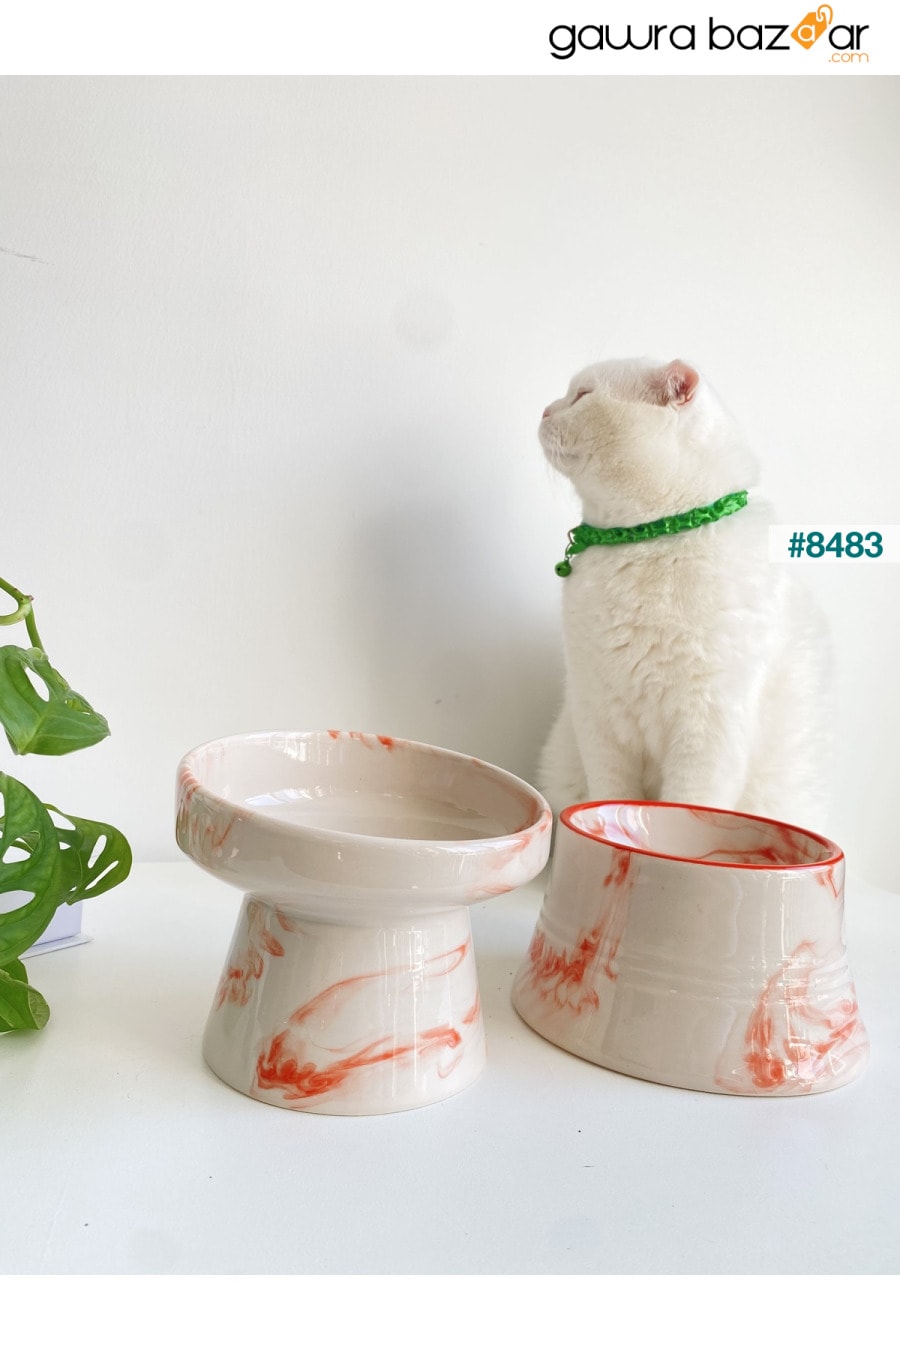 وعاء ماء من السيراميك لطعام القطط والكلاب (برتقالي أبيض وخطوط برتقالية اللون - نمط رخامي - عبوة من قطعتين) stilinbu 2